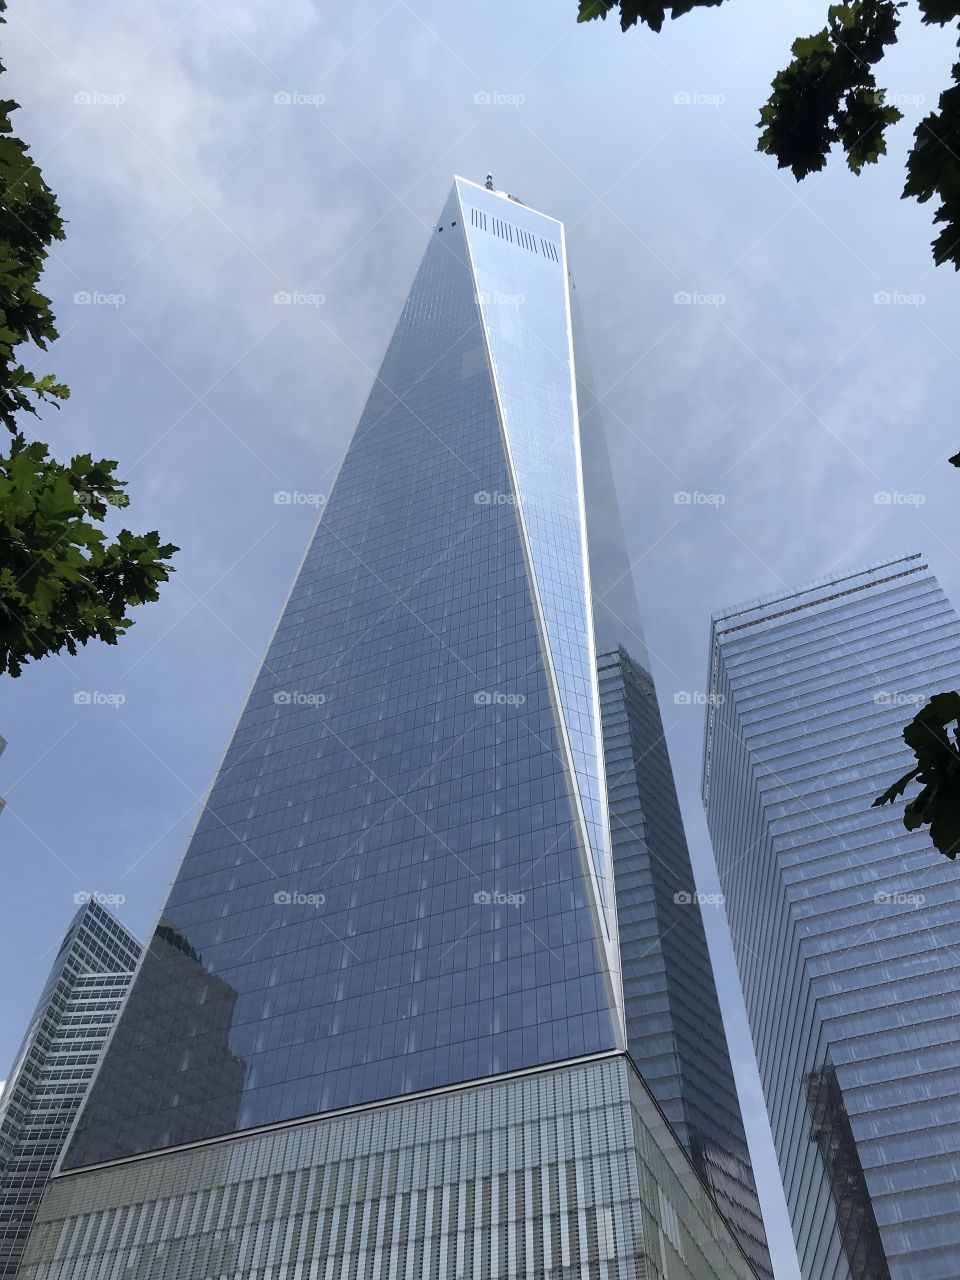 911 Memorial - World Trade Center